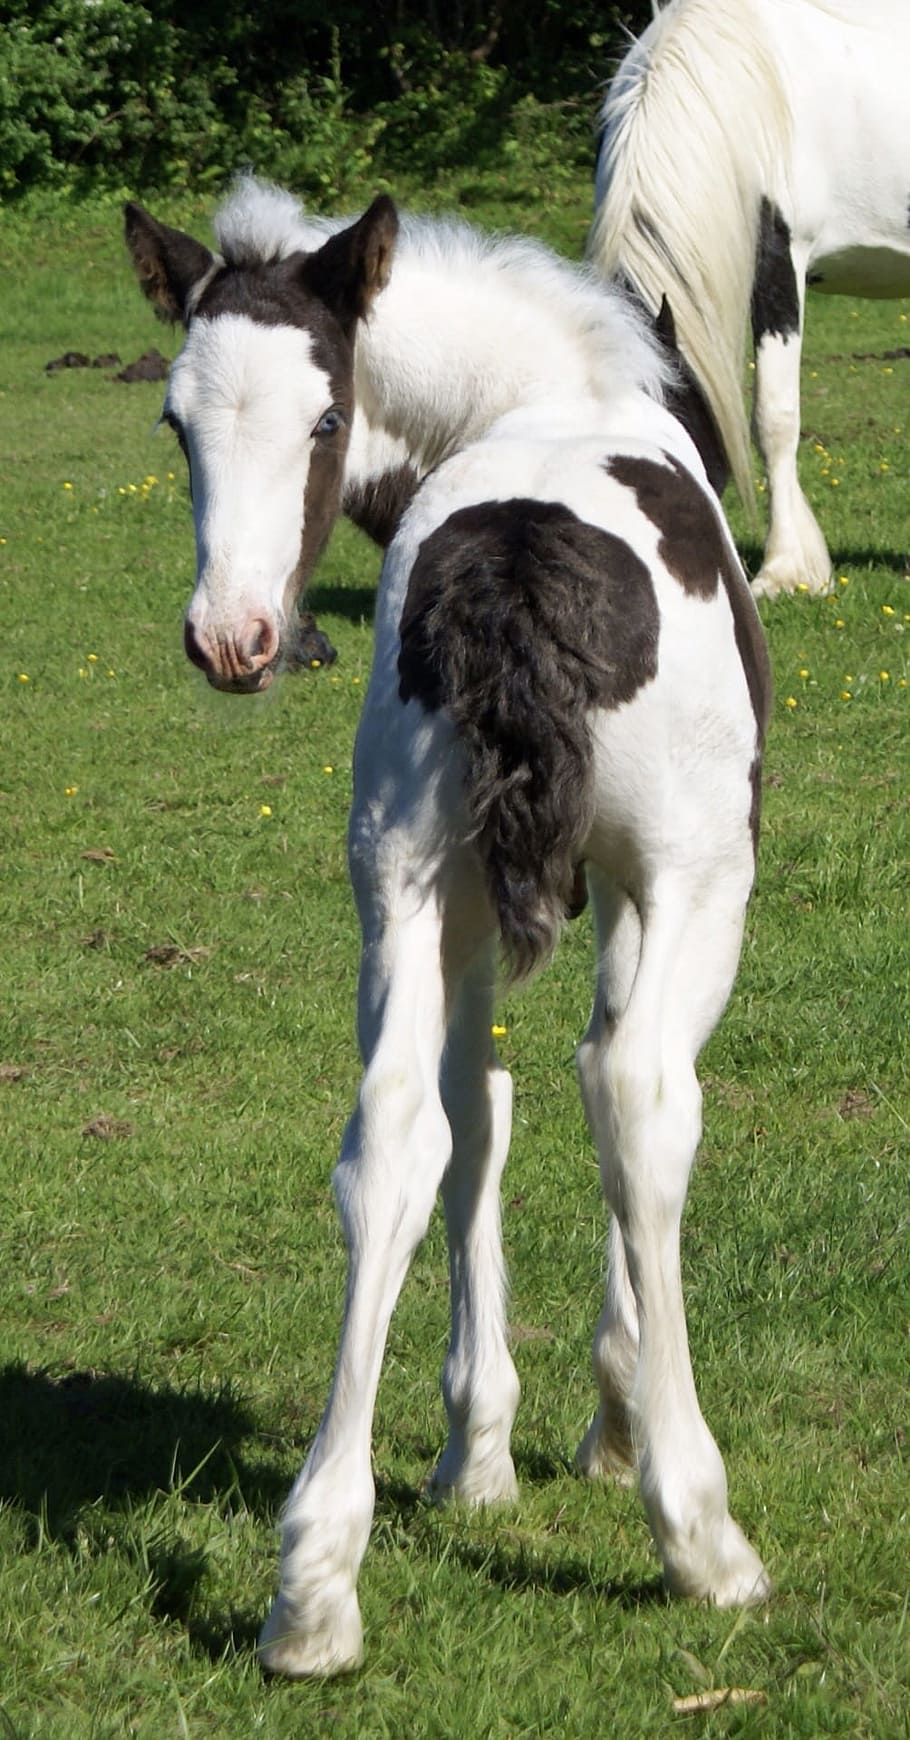 putih, hitam, kuda, Foal, Bawah, Piebald, skewbald muda, colt, pony, lucu